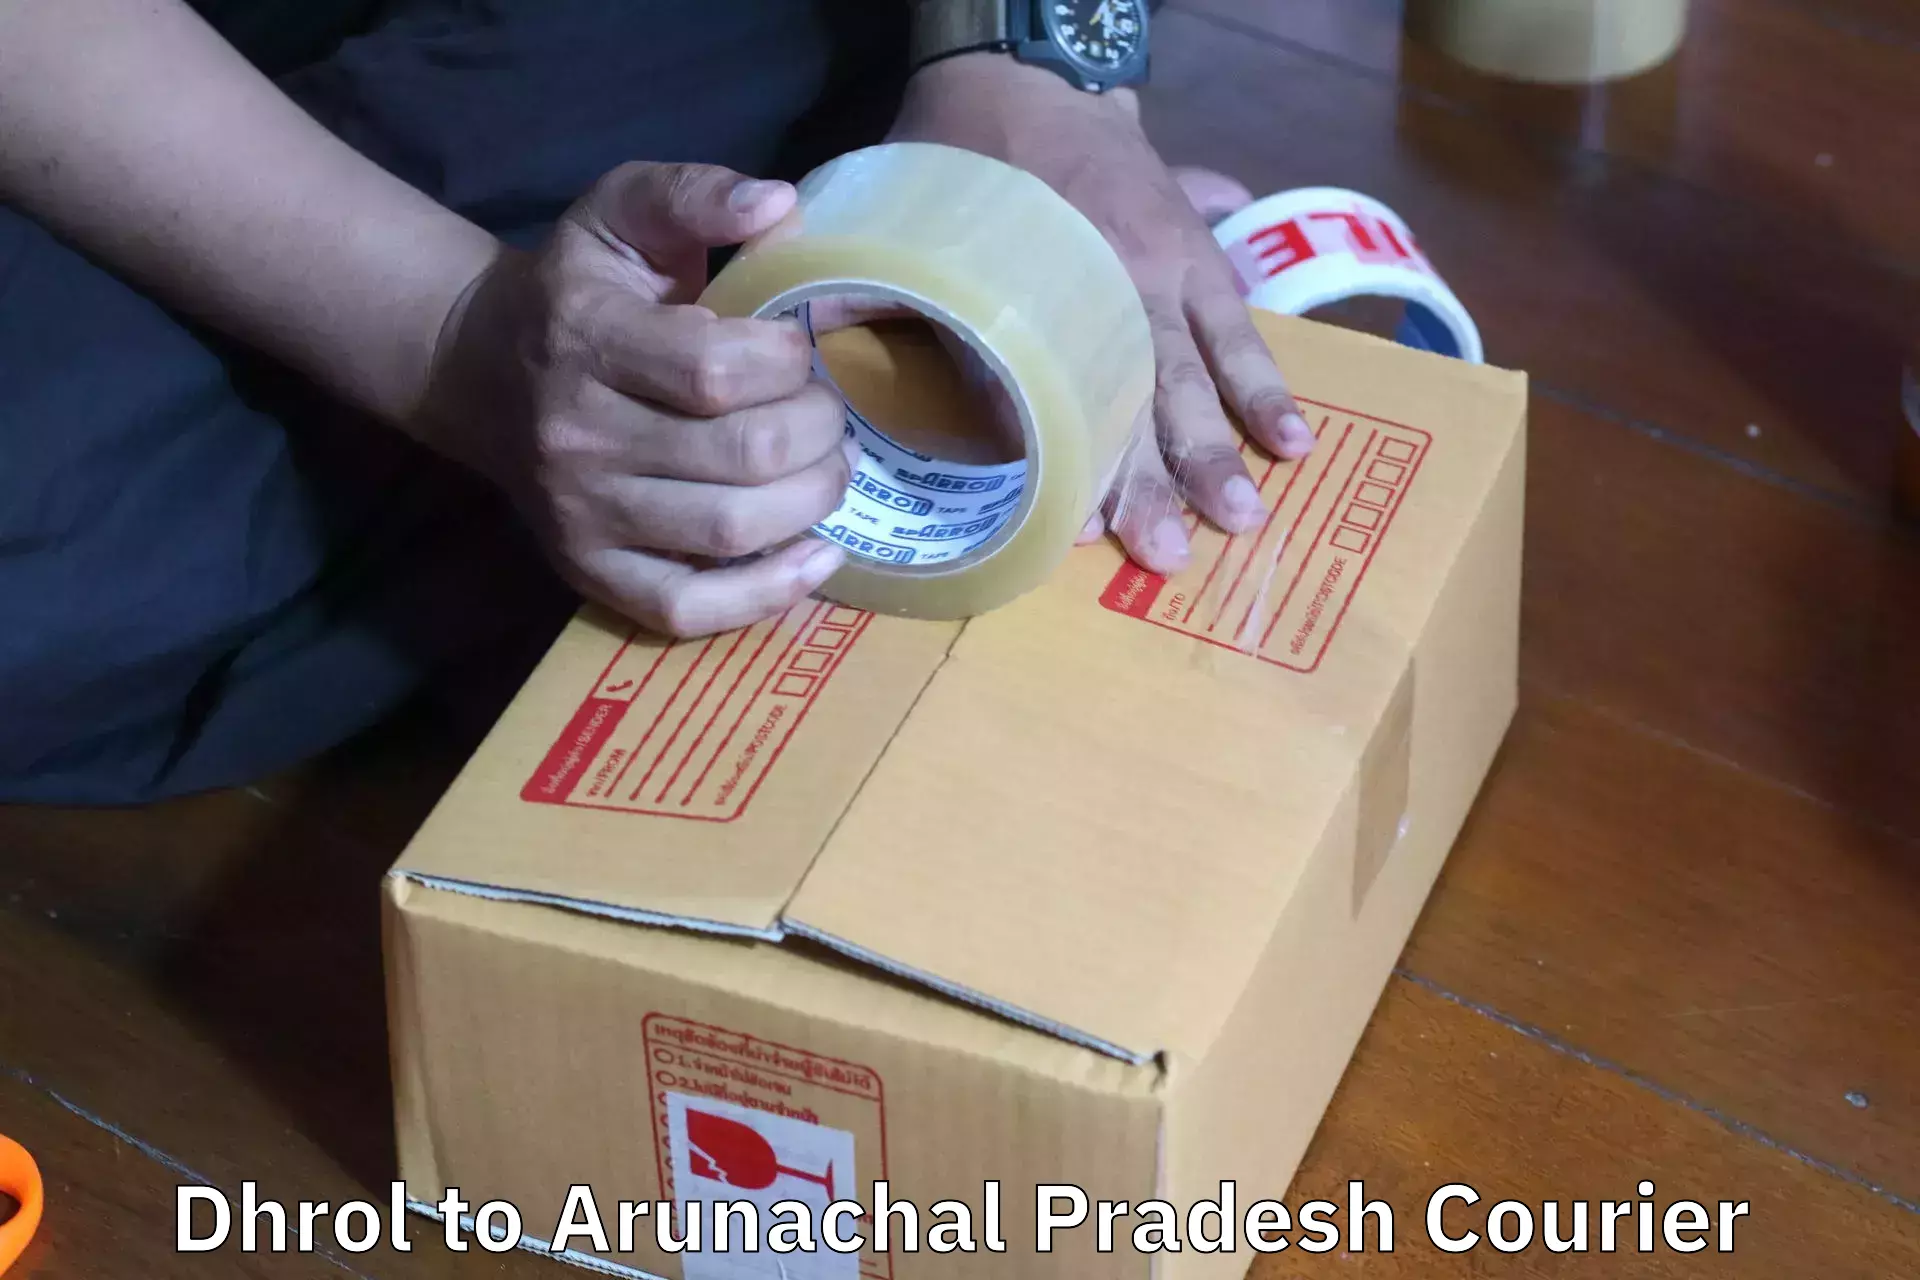 Furniture moving plans Dhrol to Arunachal Pradesh